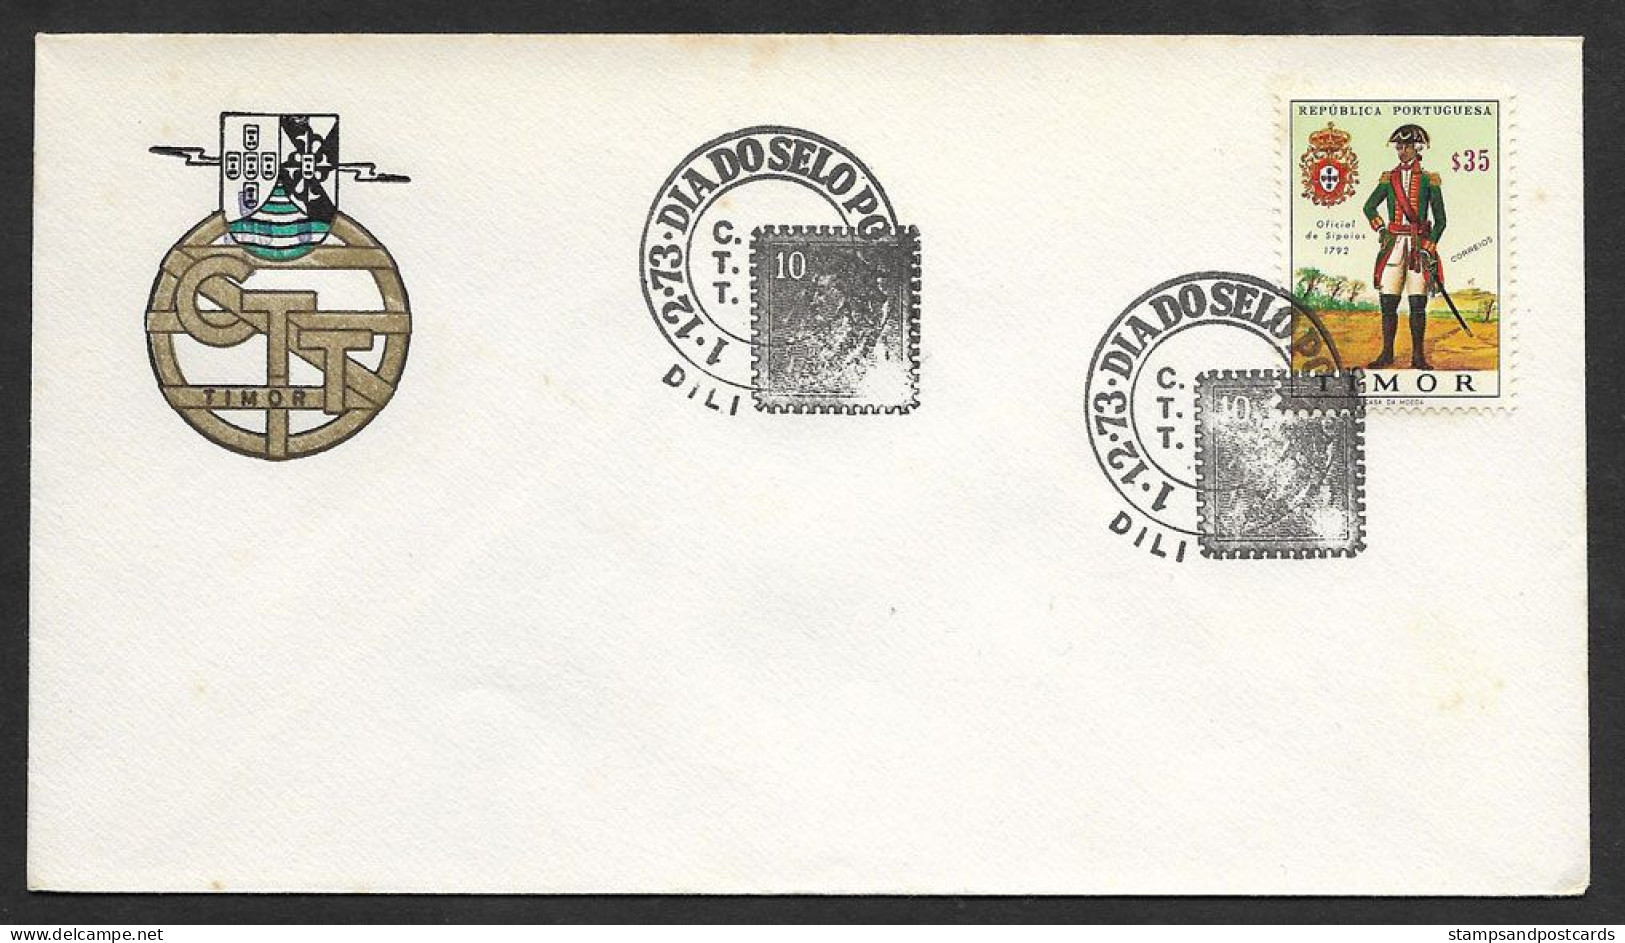 Timor Oriental Portugal Cachet Commémoratif Journée Du Timbre 1973 East Timor Event Postmark Stamp Day - Osttimor